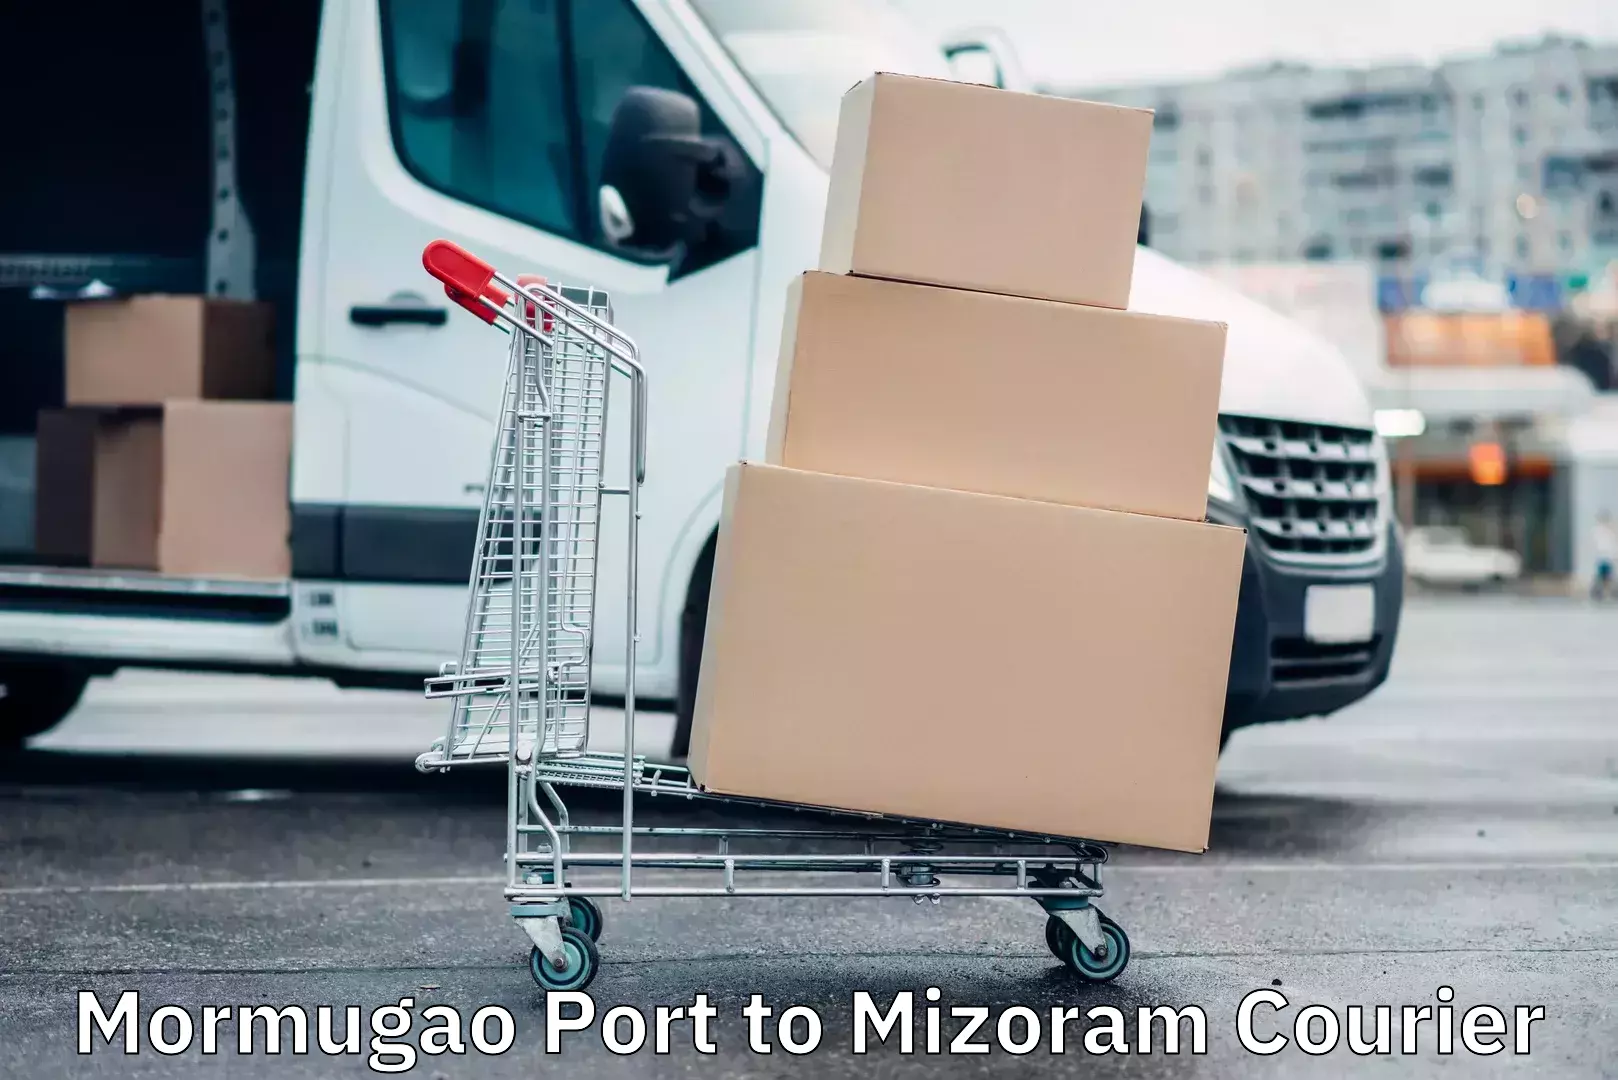 Door-to-door freight service Mormugao Port to Mizoram